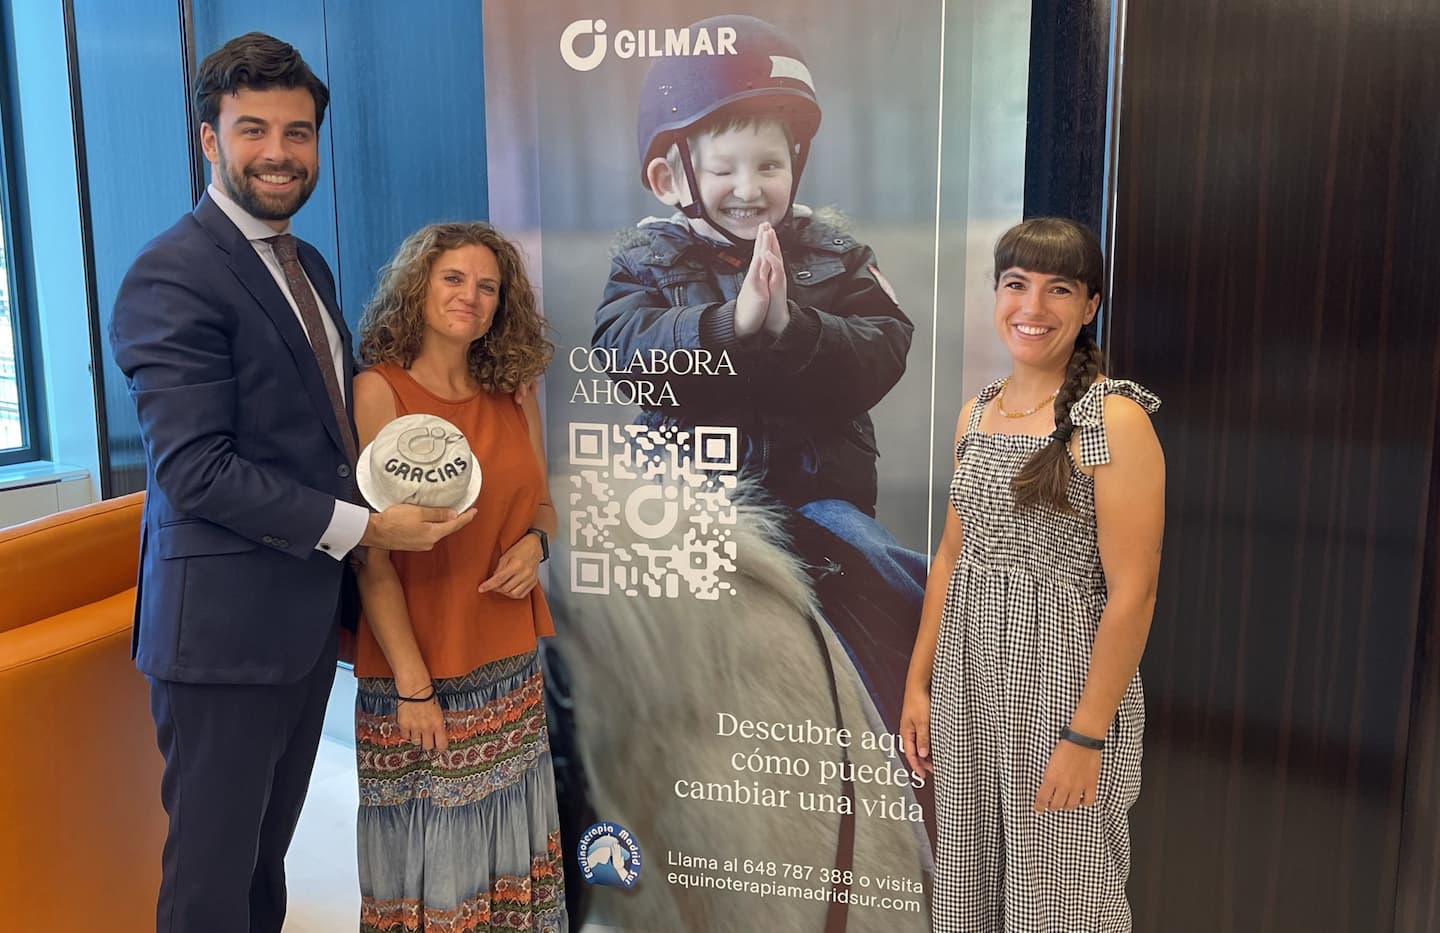 Equinoterapia Madrid Sur agradece a GILMAR la donación